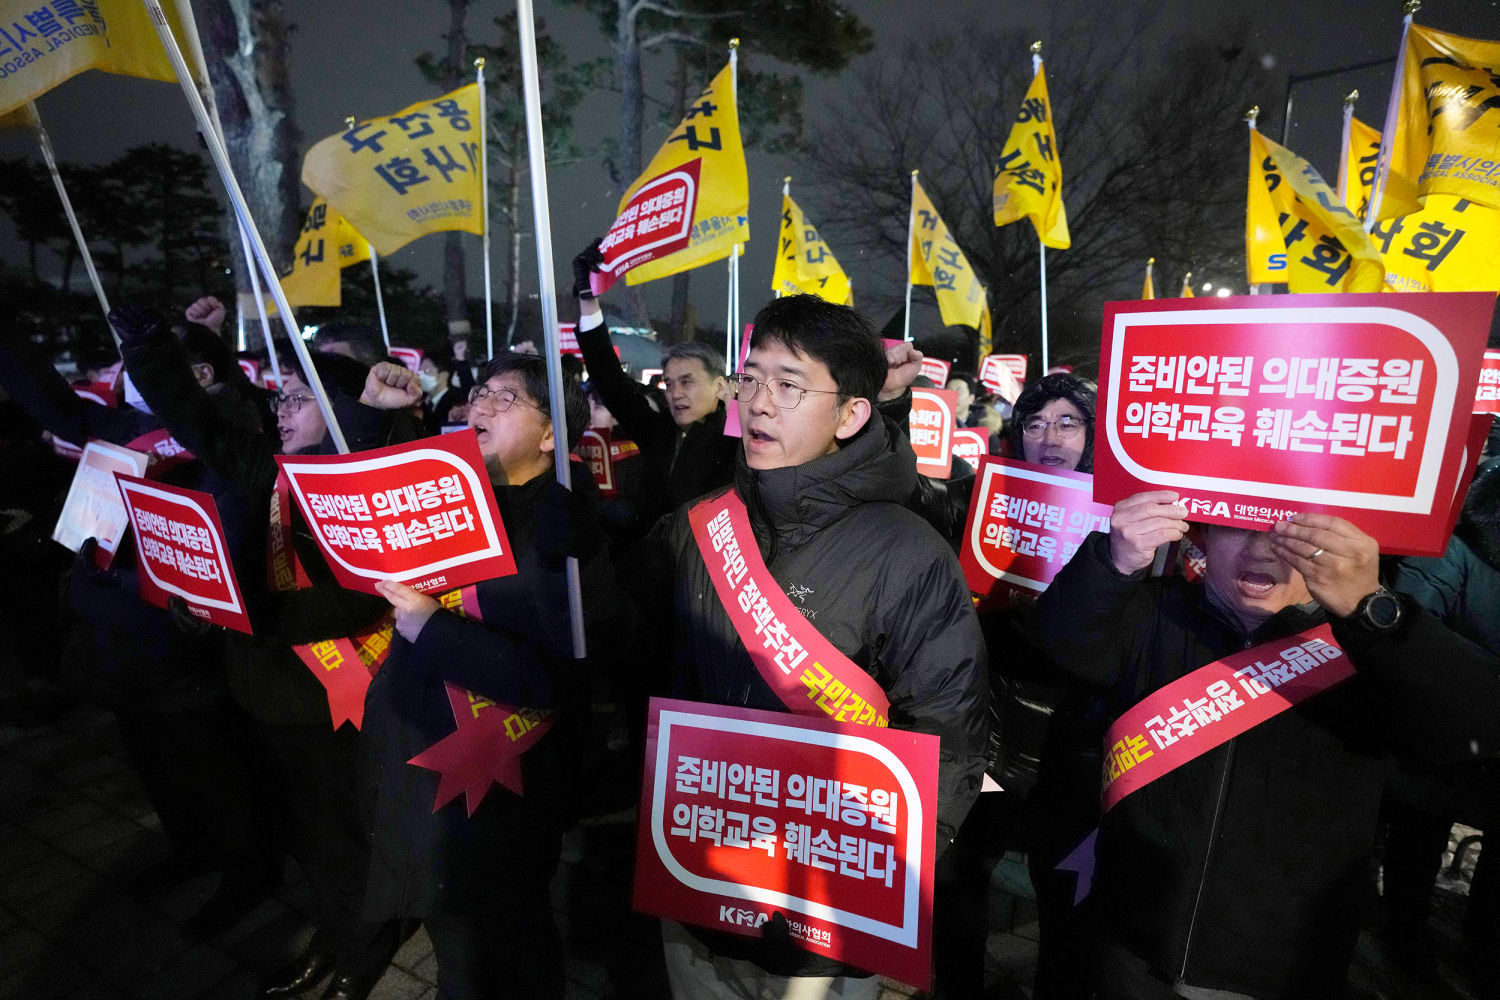 De gezondheidswaarschuwing van Zuid-Korea is vanwege een doktersstaking verhoogd naar 'ernstig'